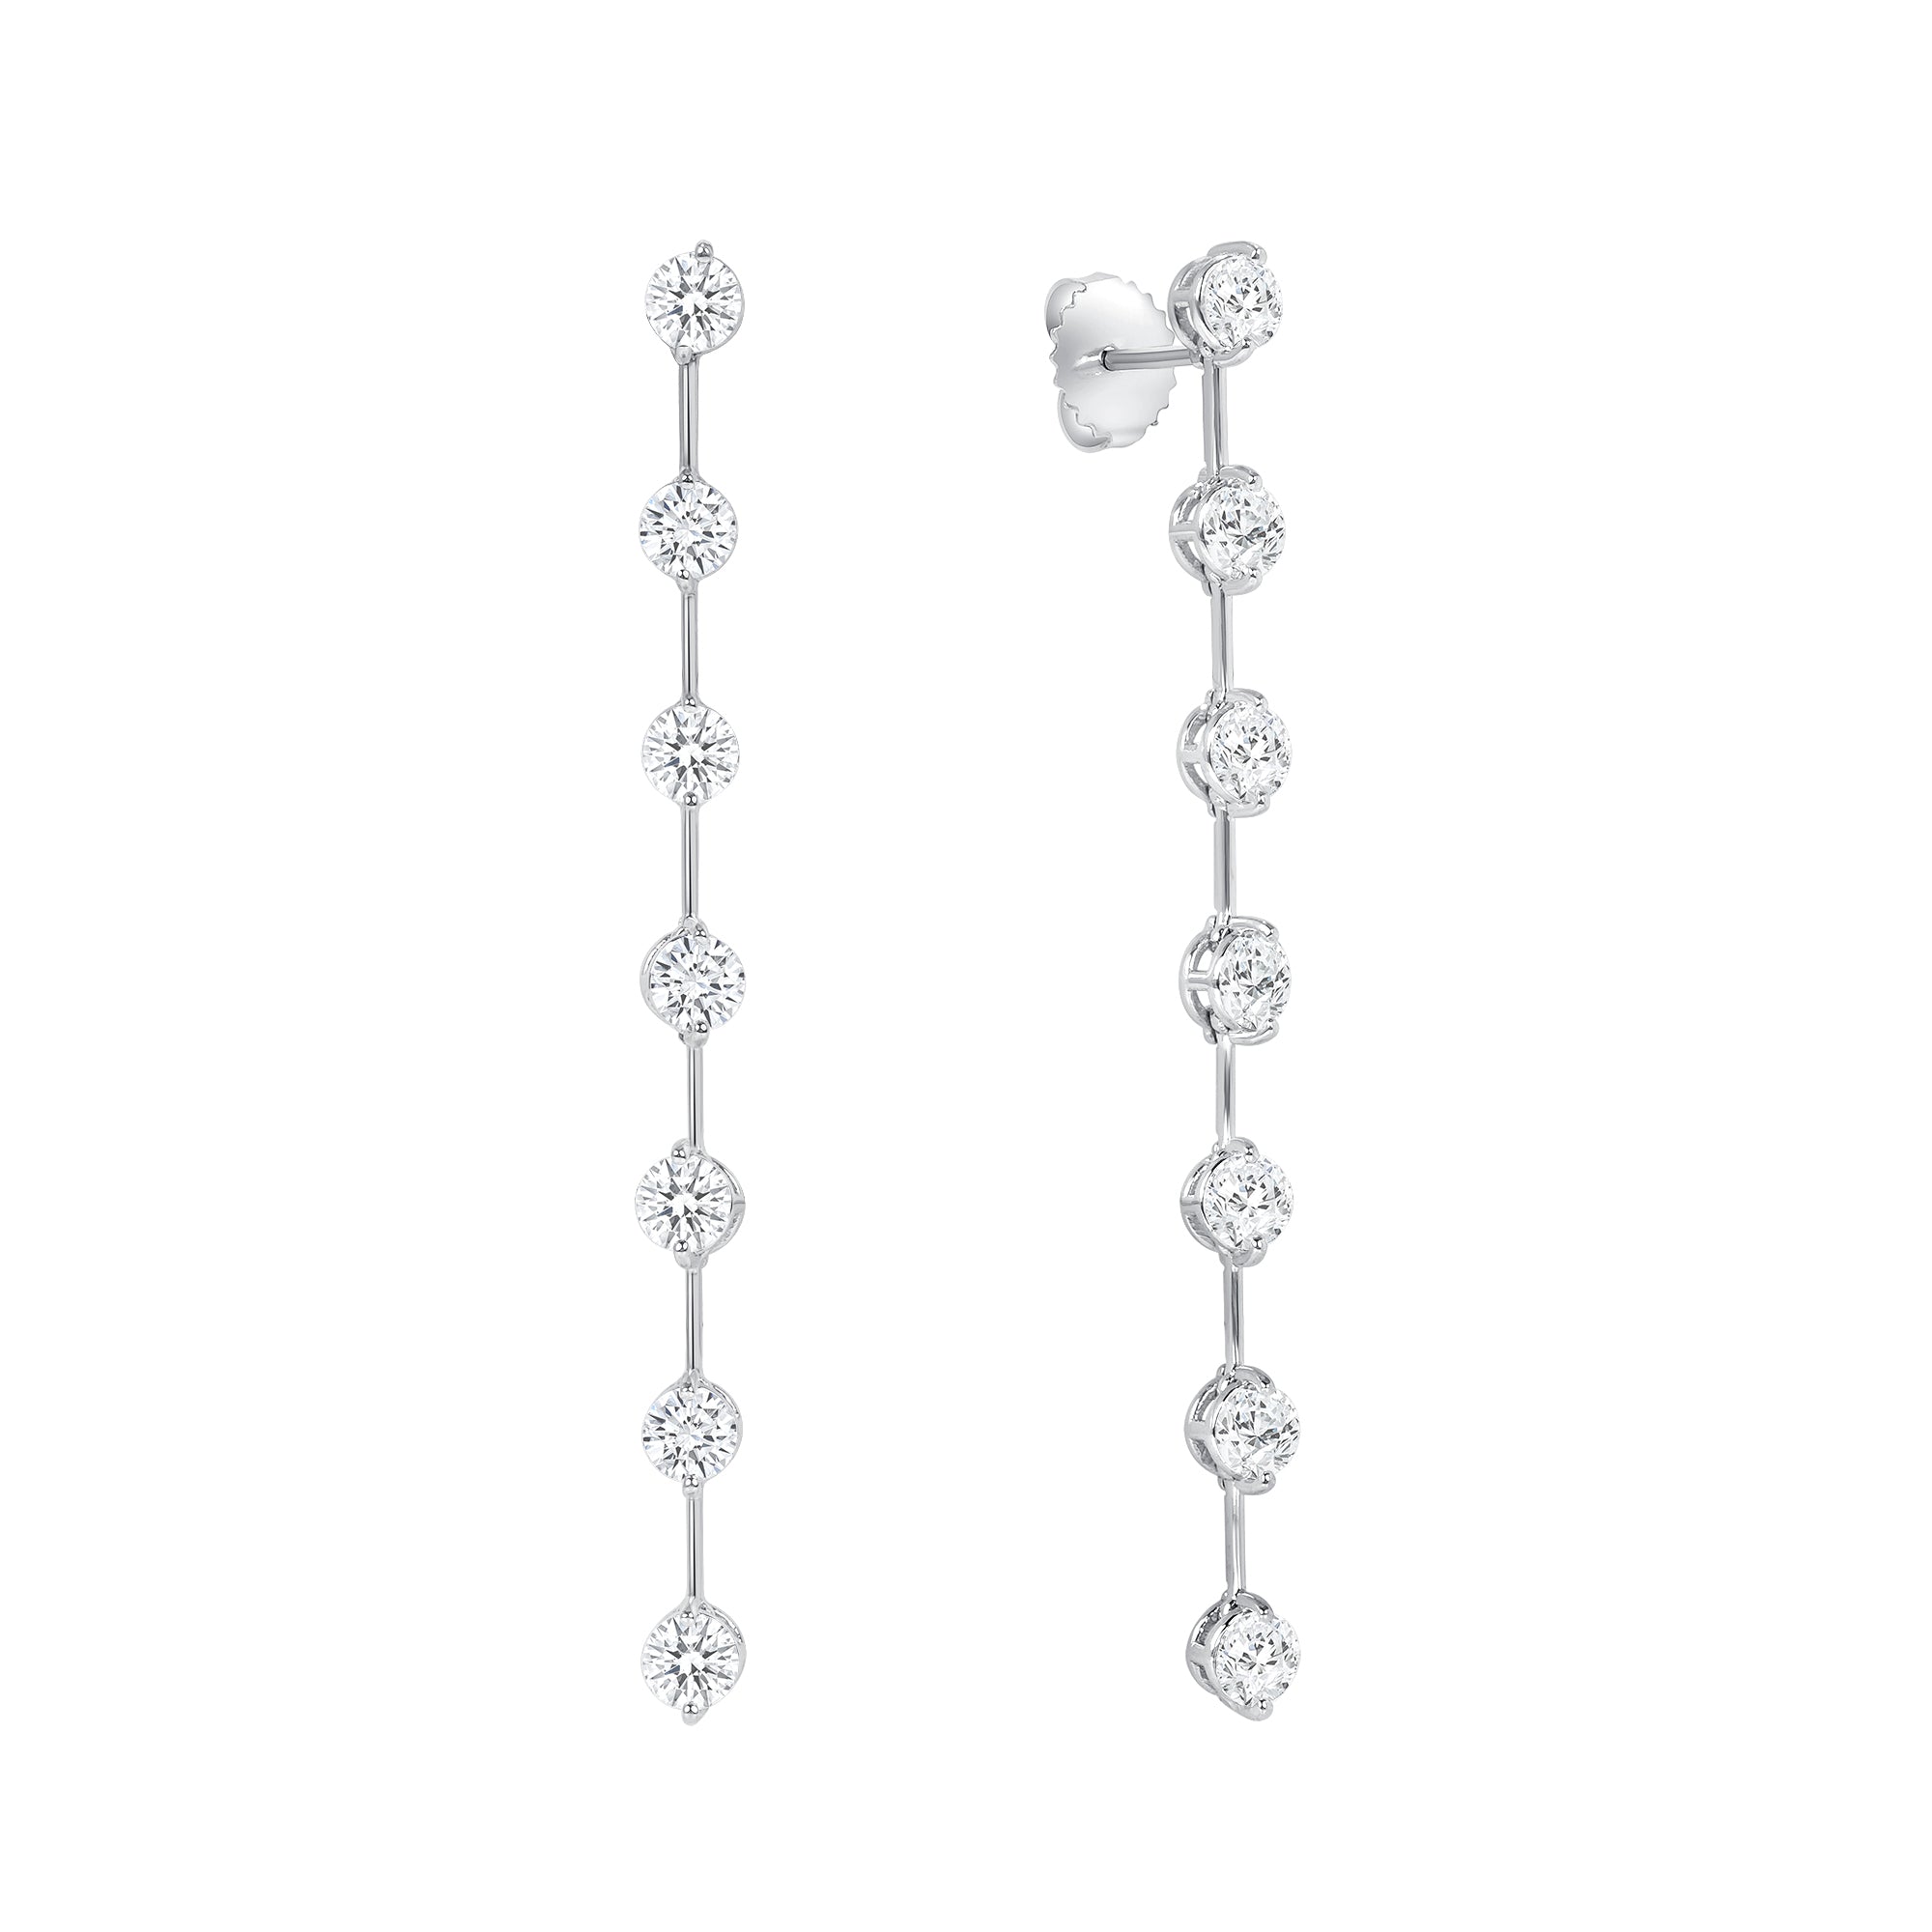 Elegant Round Brilliant Diamond Dangling Earrings in 18K White Gold